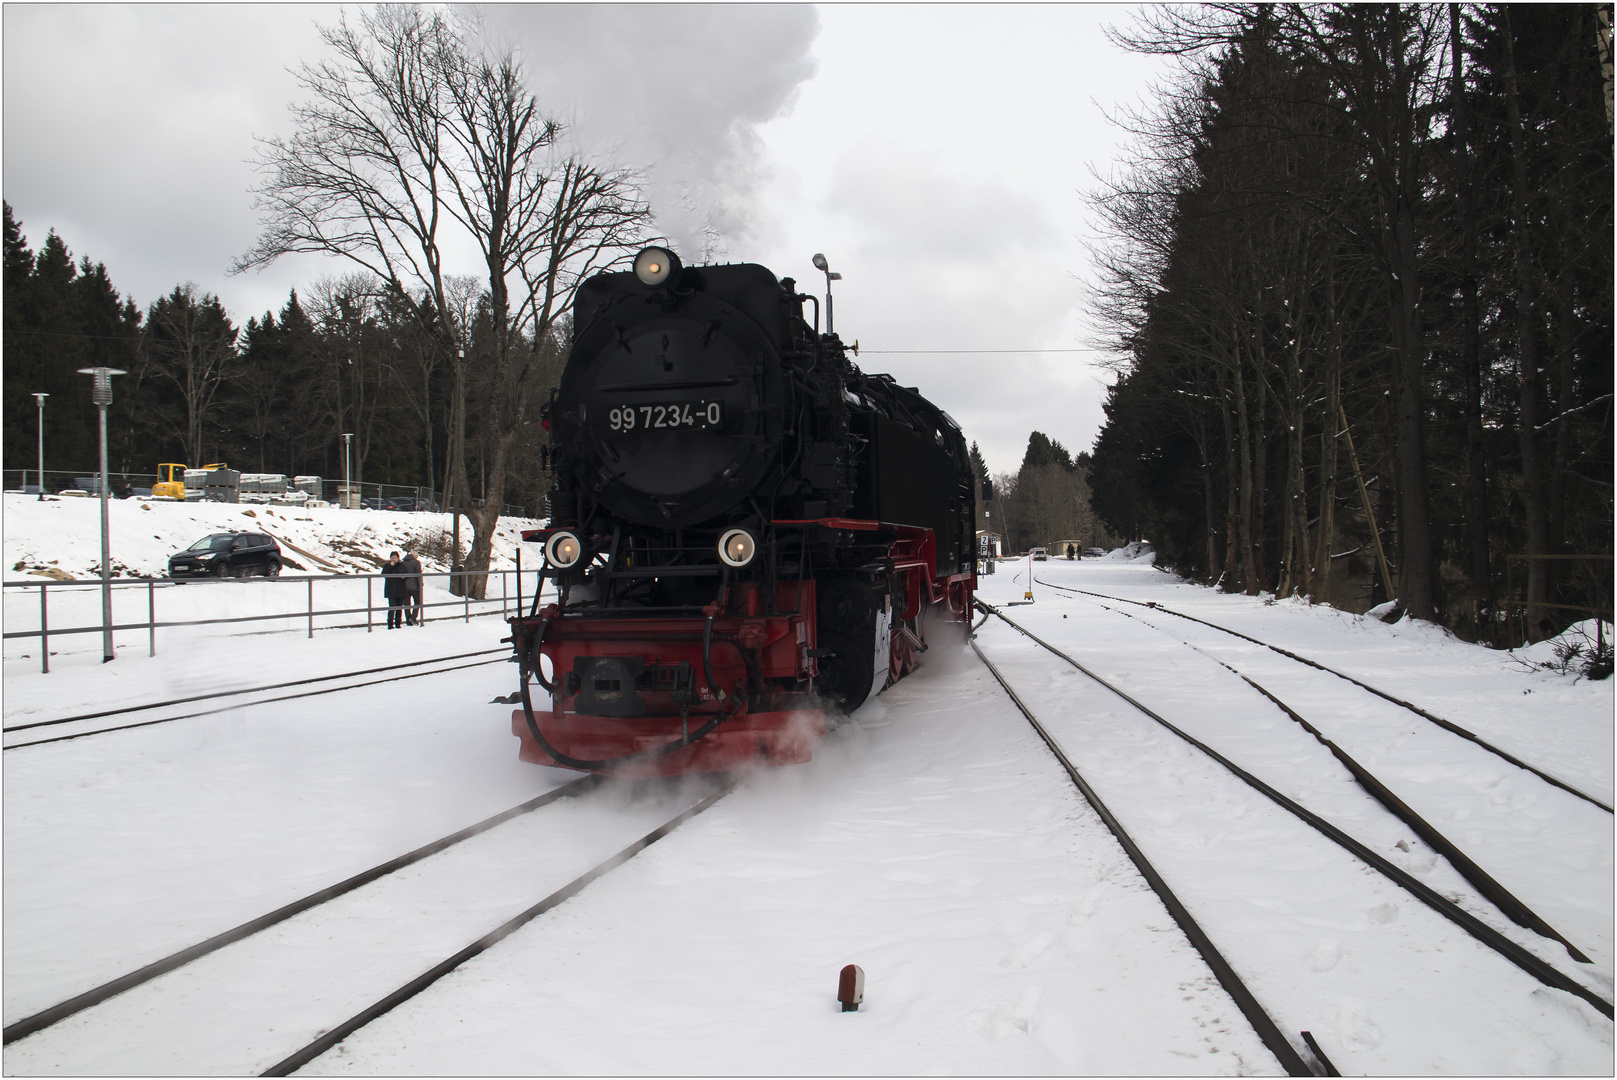 Lok 99 7234-0 - Umsetzen zum Zug (17.02.2018) #2